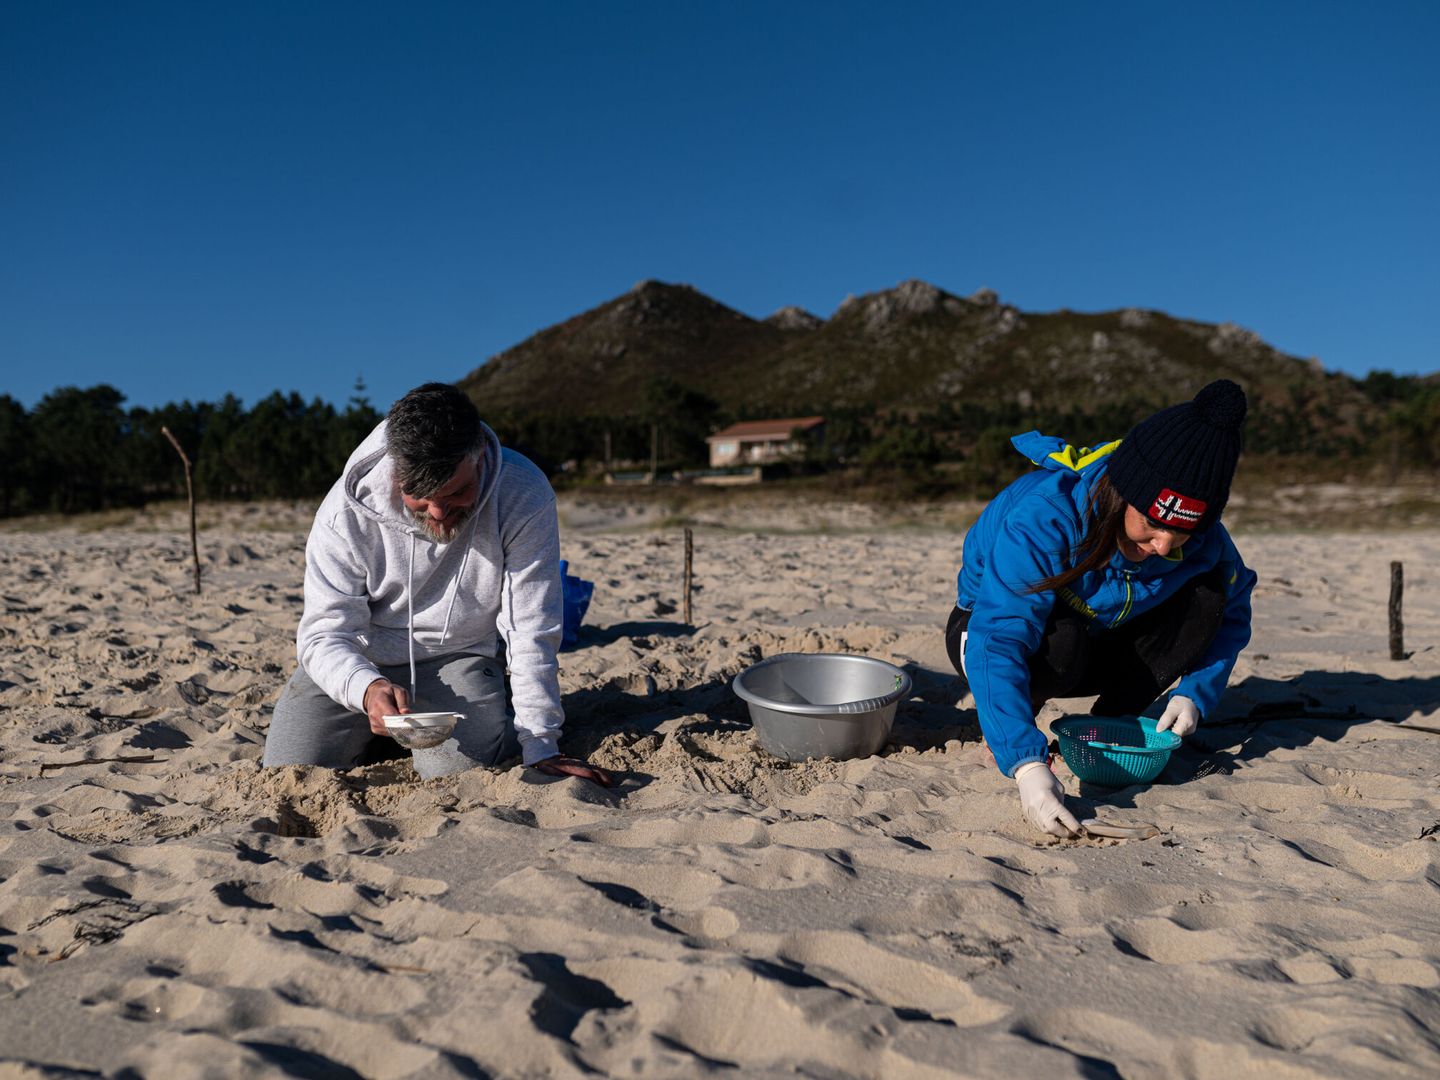 Voluntarios hacen una recogida de pellets de la arena. (Europa Press/Elena Fernández)